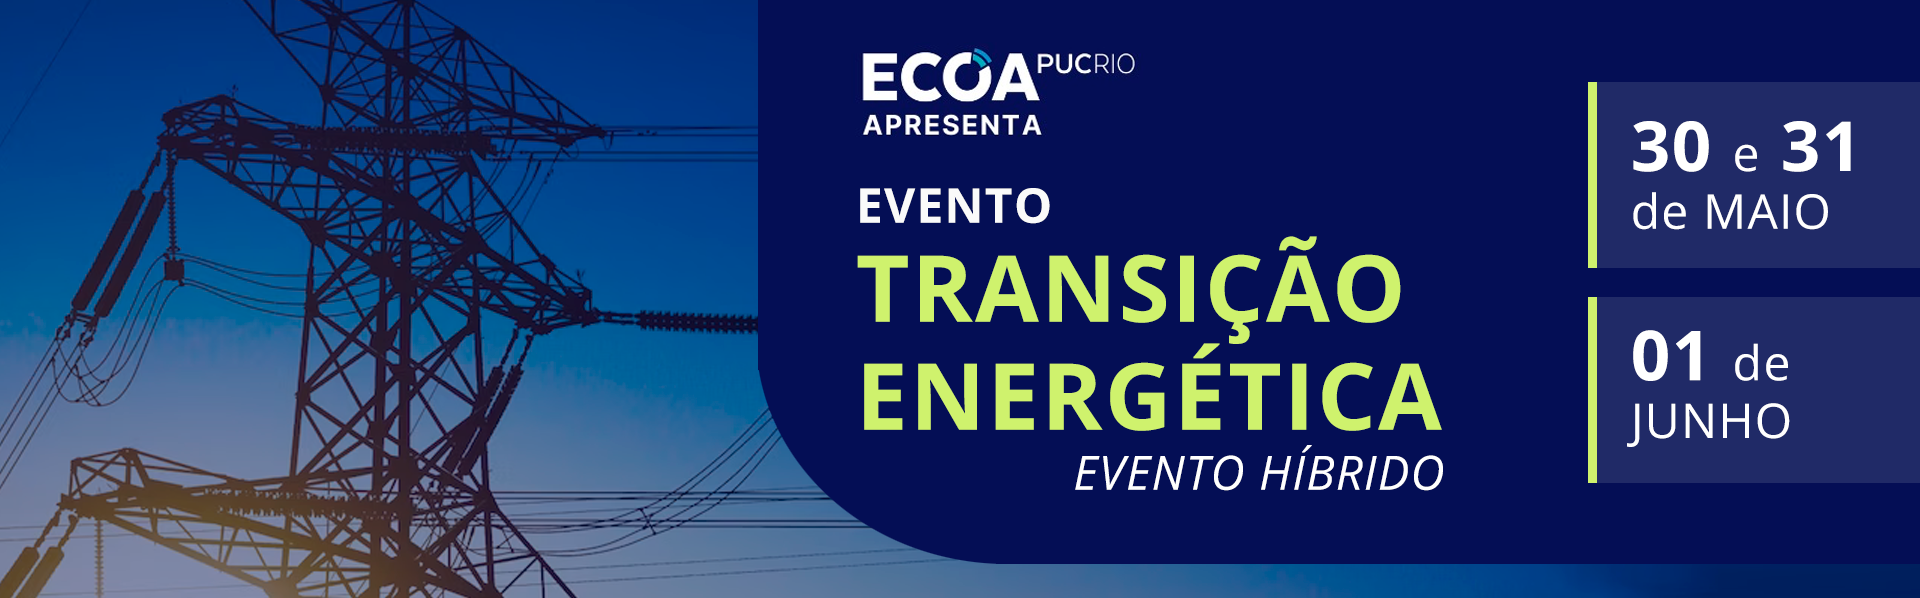 TRANSIÇÃO ENERGÉTICA - Evento híbrido, dias 30, 31/05 e 01/06